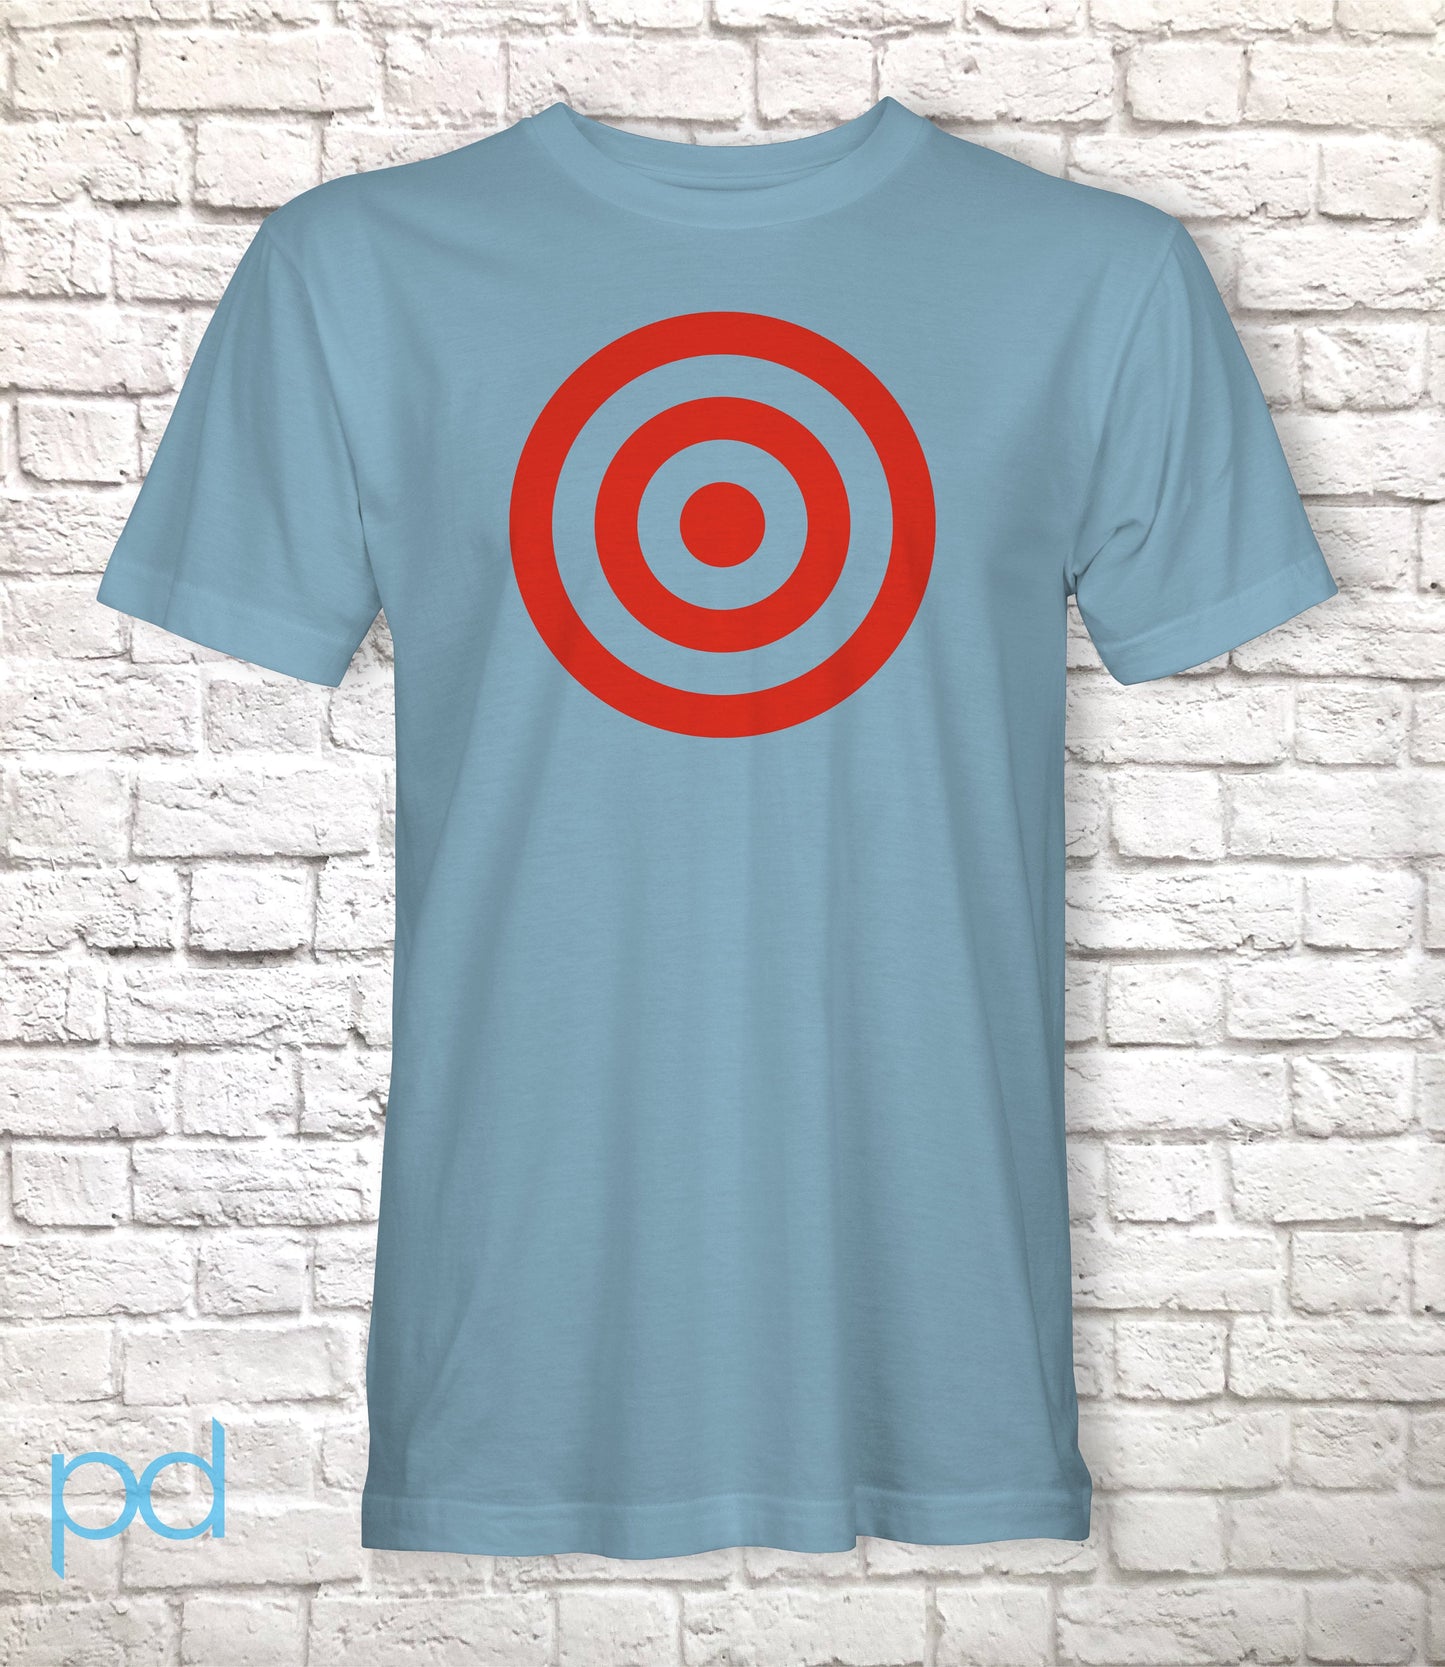 Bullseye Target Rings T Shirt, Red Shooting Rings Tee Tshirt